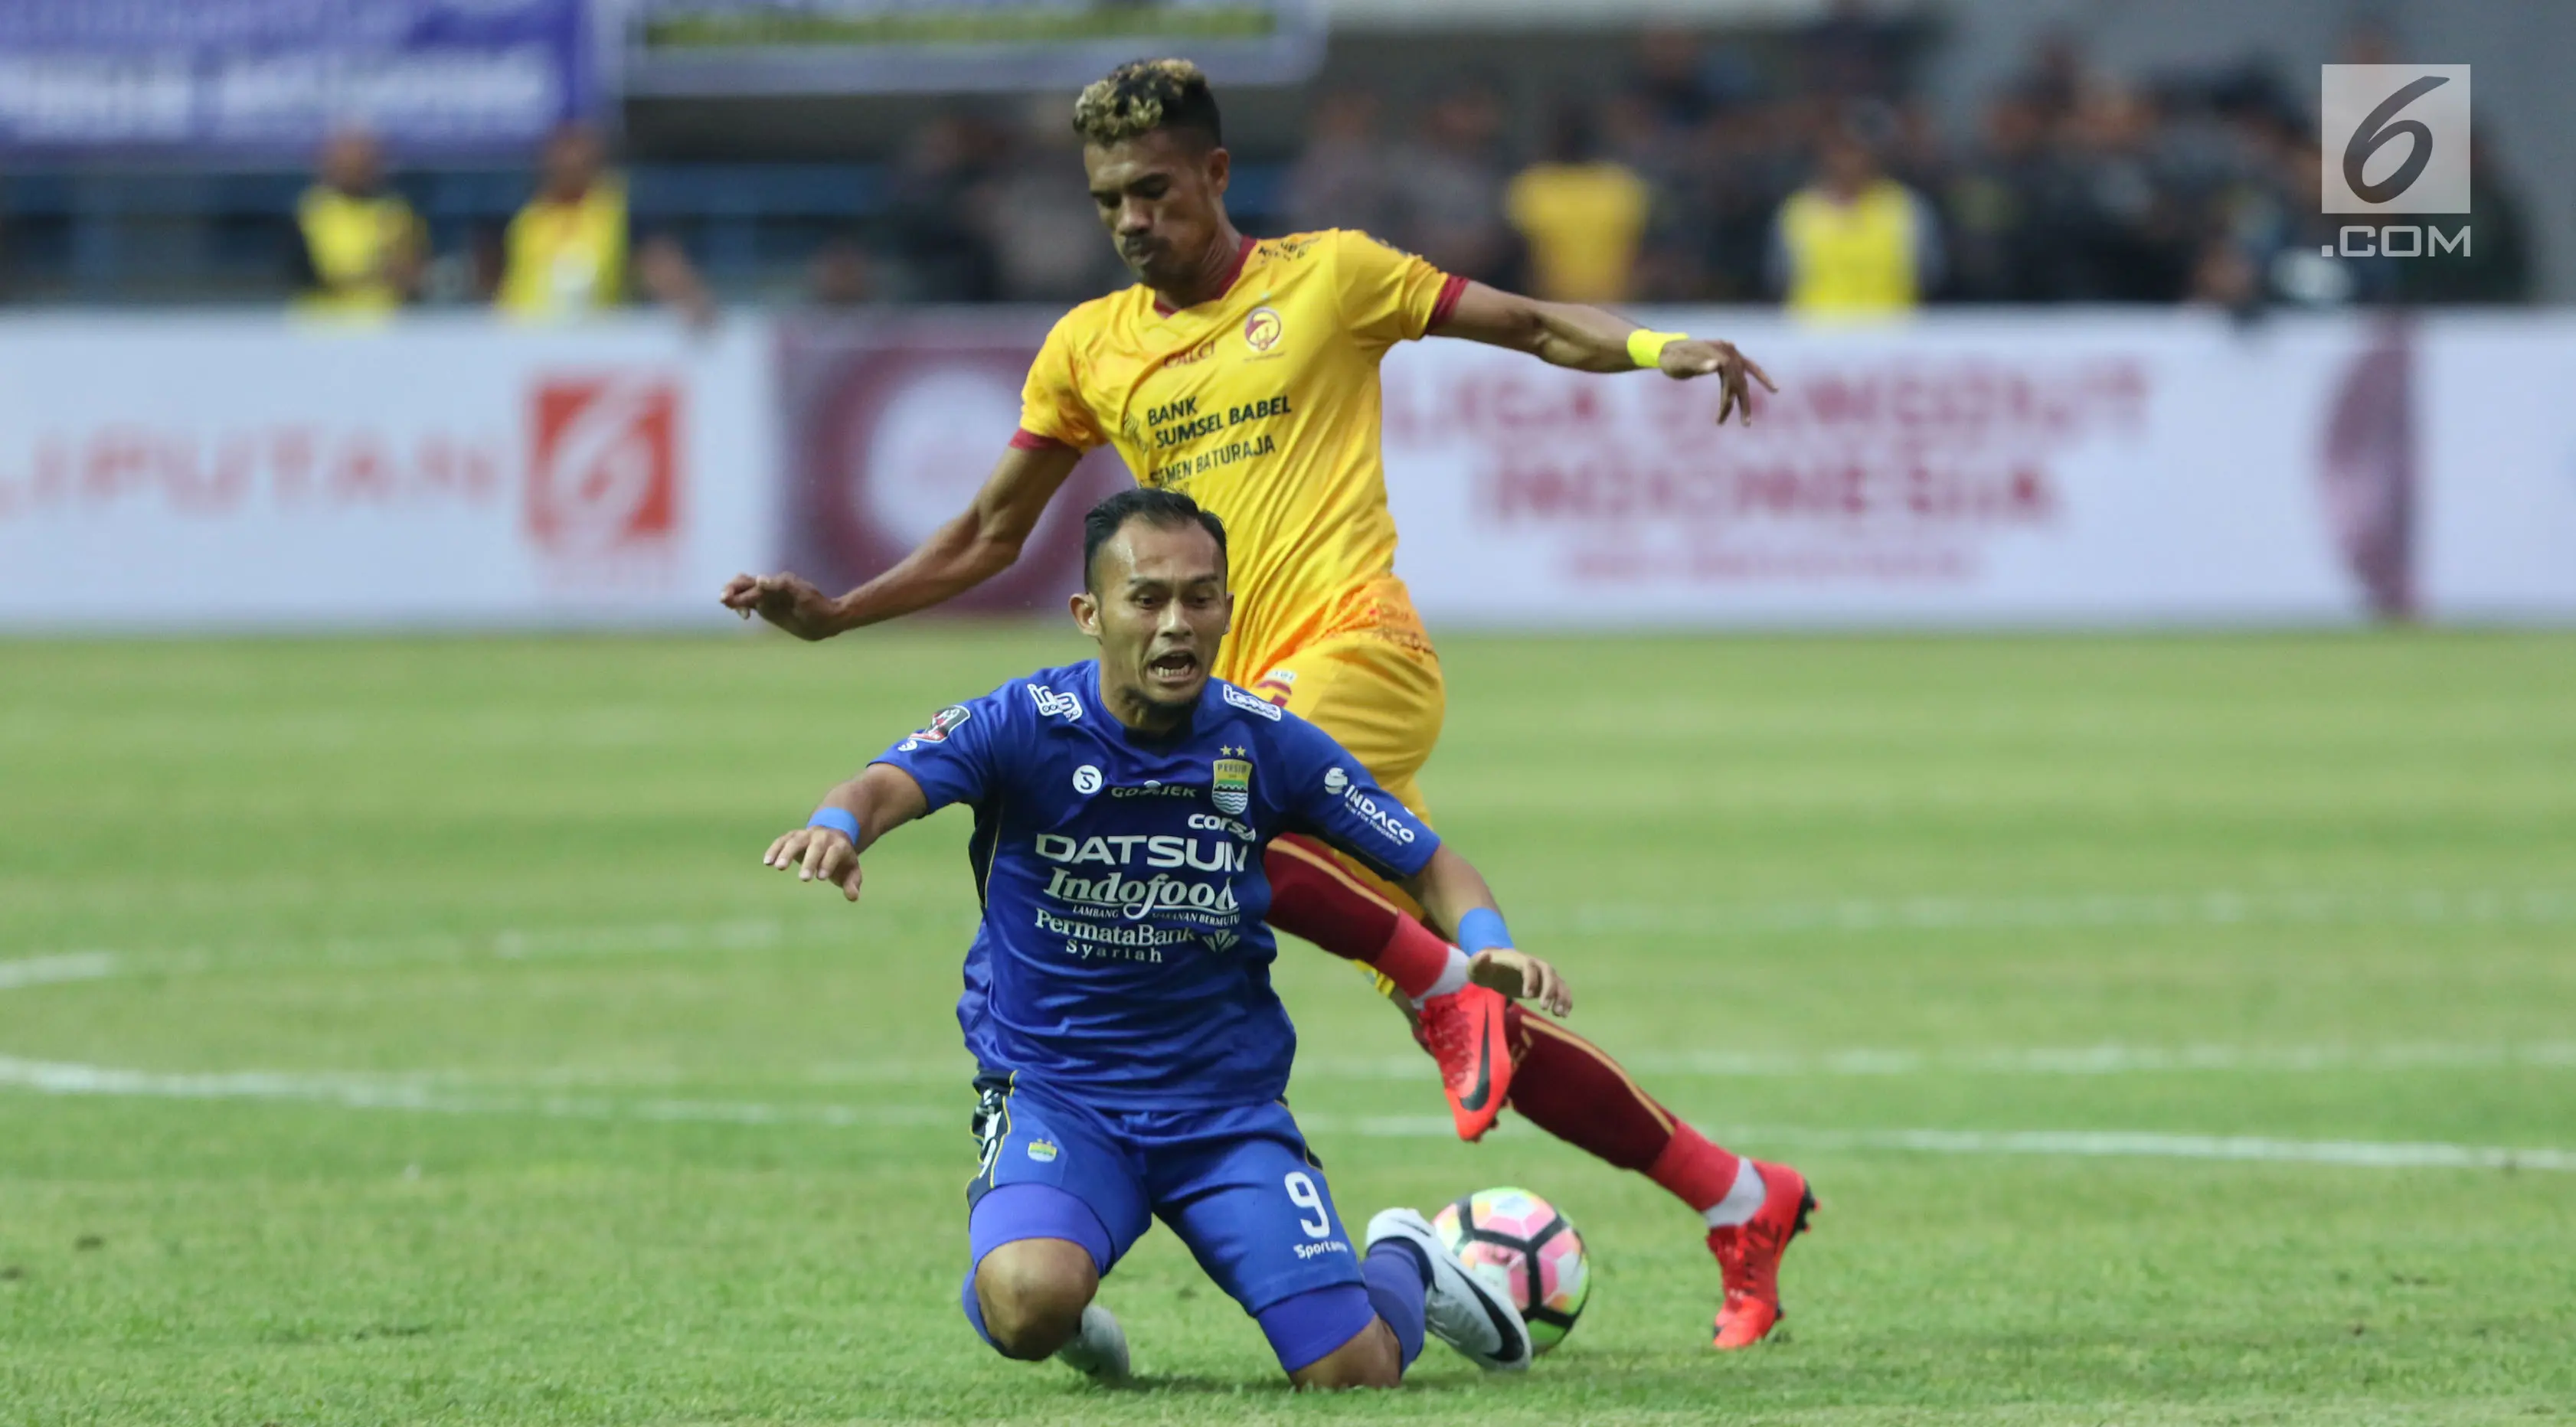 Penyerang Persib, Airlangga terjatuh saat berebut bola dengan pemain Sriwijaya FC, Alfin Tuasalamony pada laga pembuka Piala Presiden 2018 di Stadion GBLA, Bandung, Selasa (16/1). Persib unggul 1-0. (/Helmi Fithriansyah)